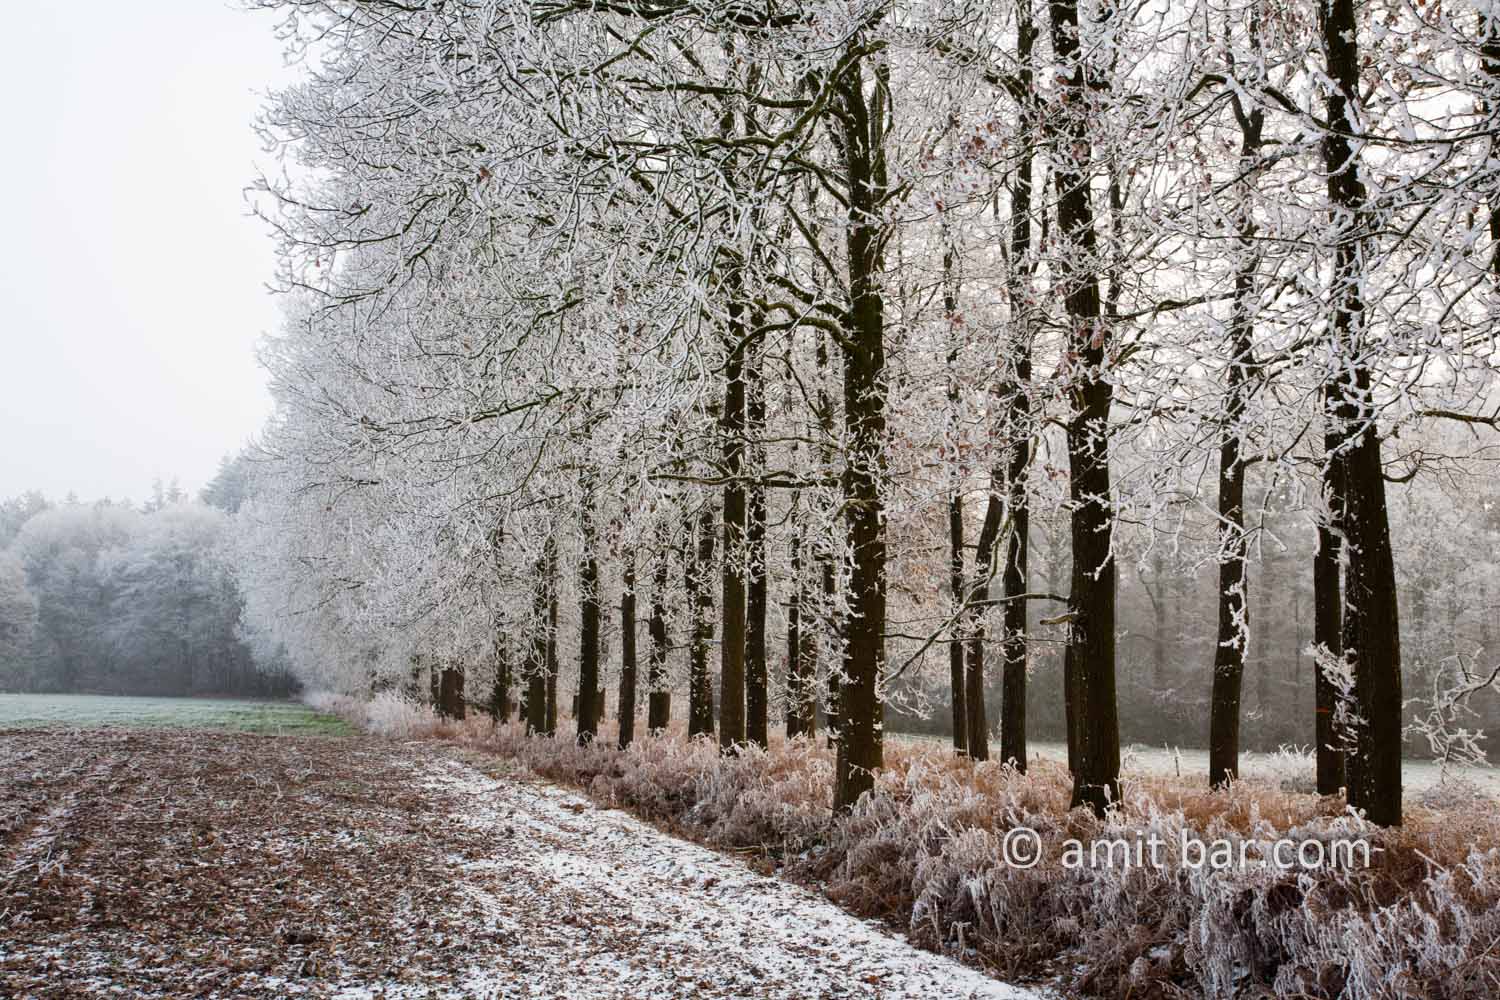 Frozen nature I: Lane of oaks in frost